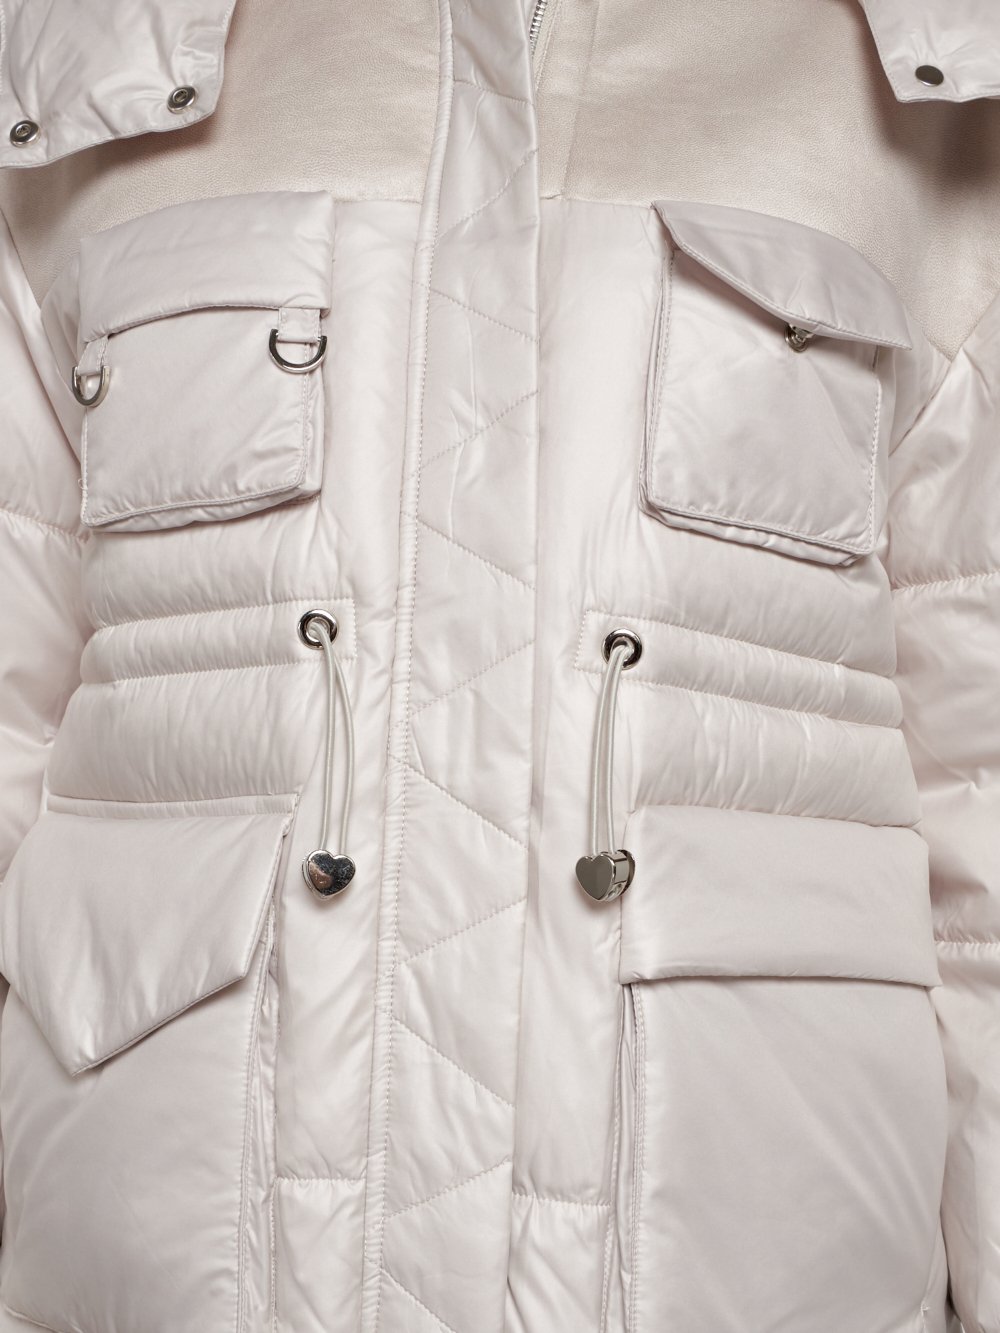 Купить куртку женскую зимнюю оптом от производителя недорого в Москве 13338B 1